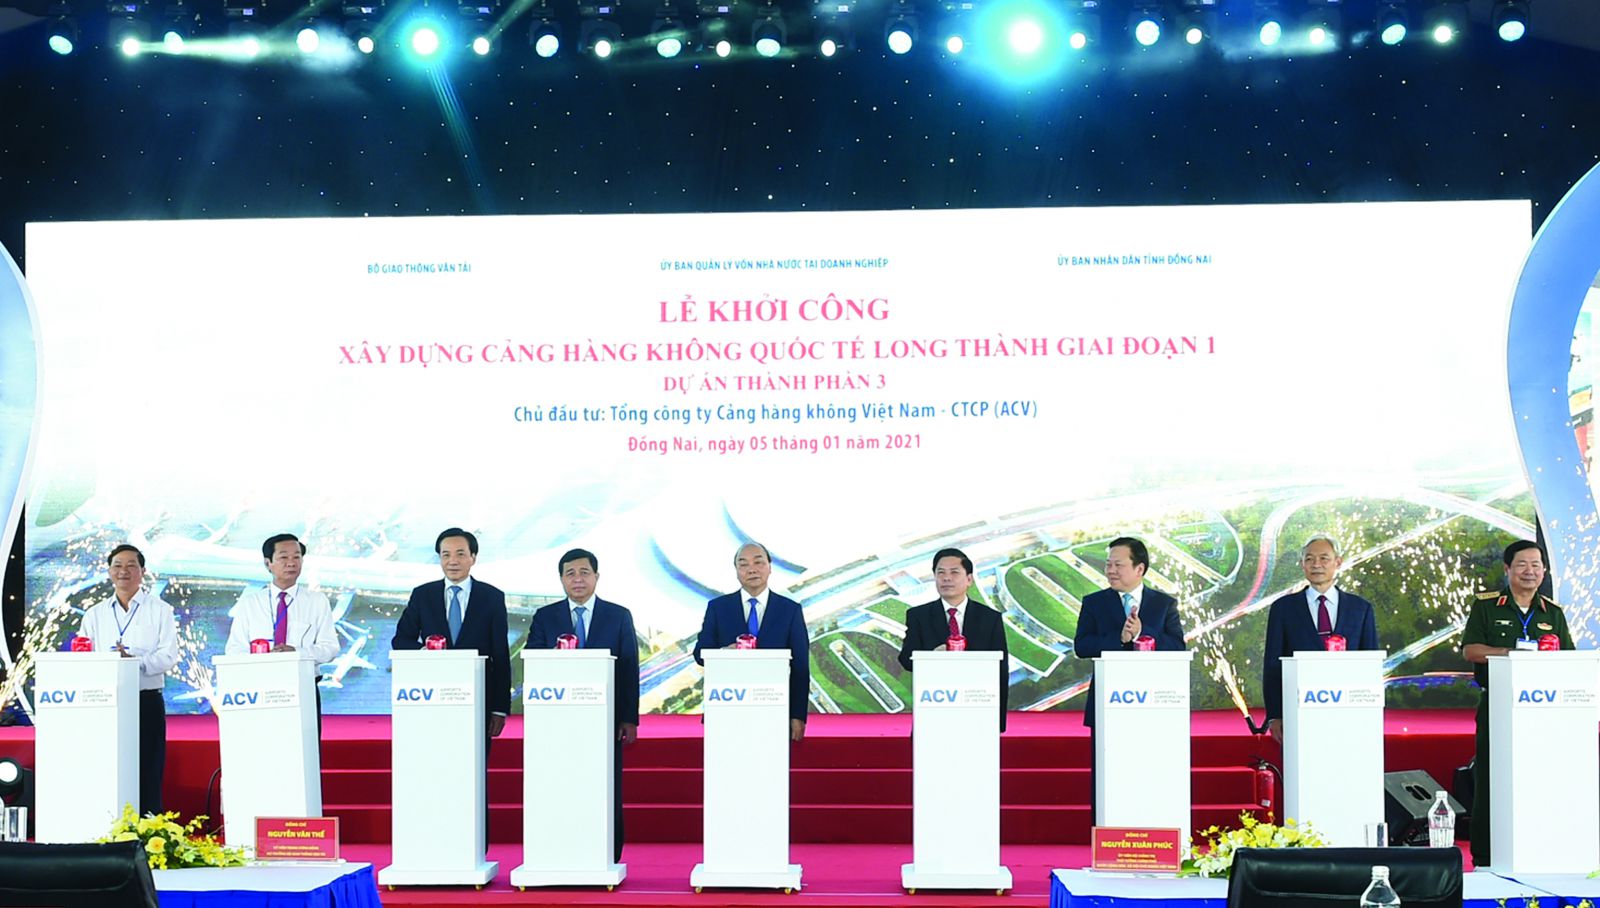  Dự án sân bay Long Thành khi hoàn thành sẽ góp phần thúc đẩy phát triển kinh tế của khu vực và đưa Việt Nam trở thành điểm trung chuyển của thế giới. Ảnh: Quang Hiếu